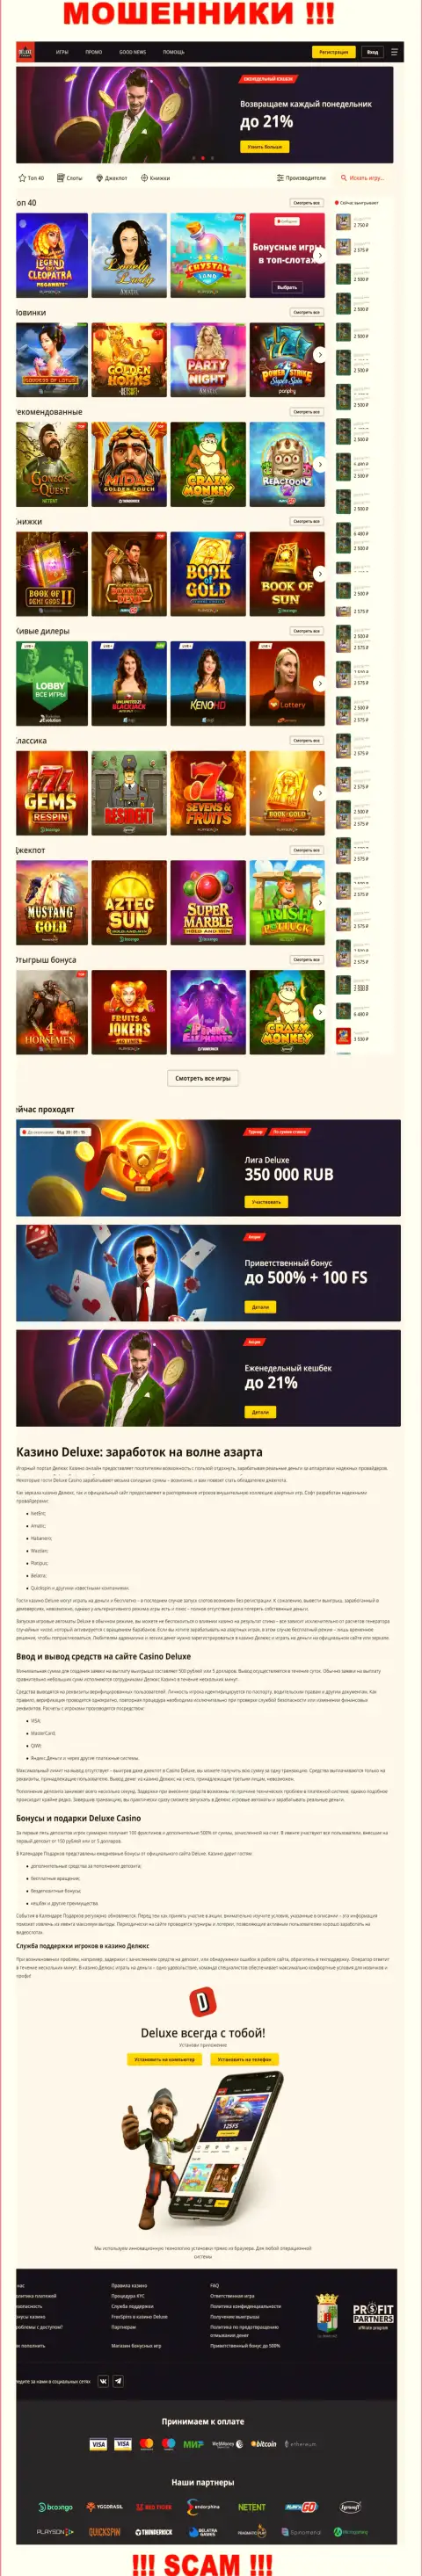 Официальная online страница организации Deluxe Casino